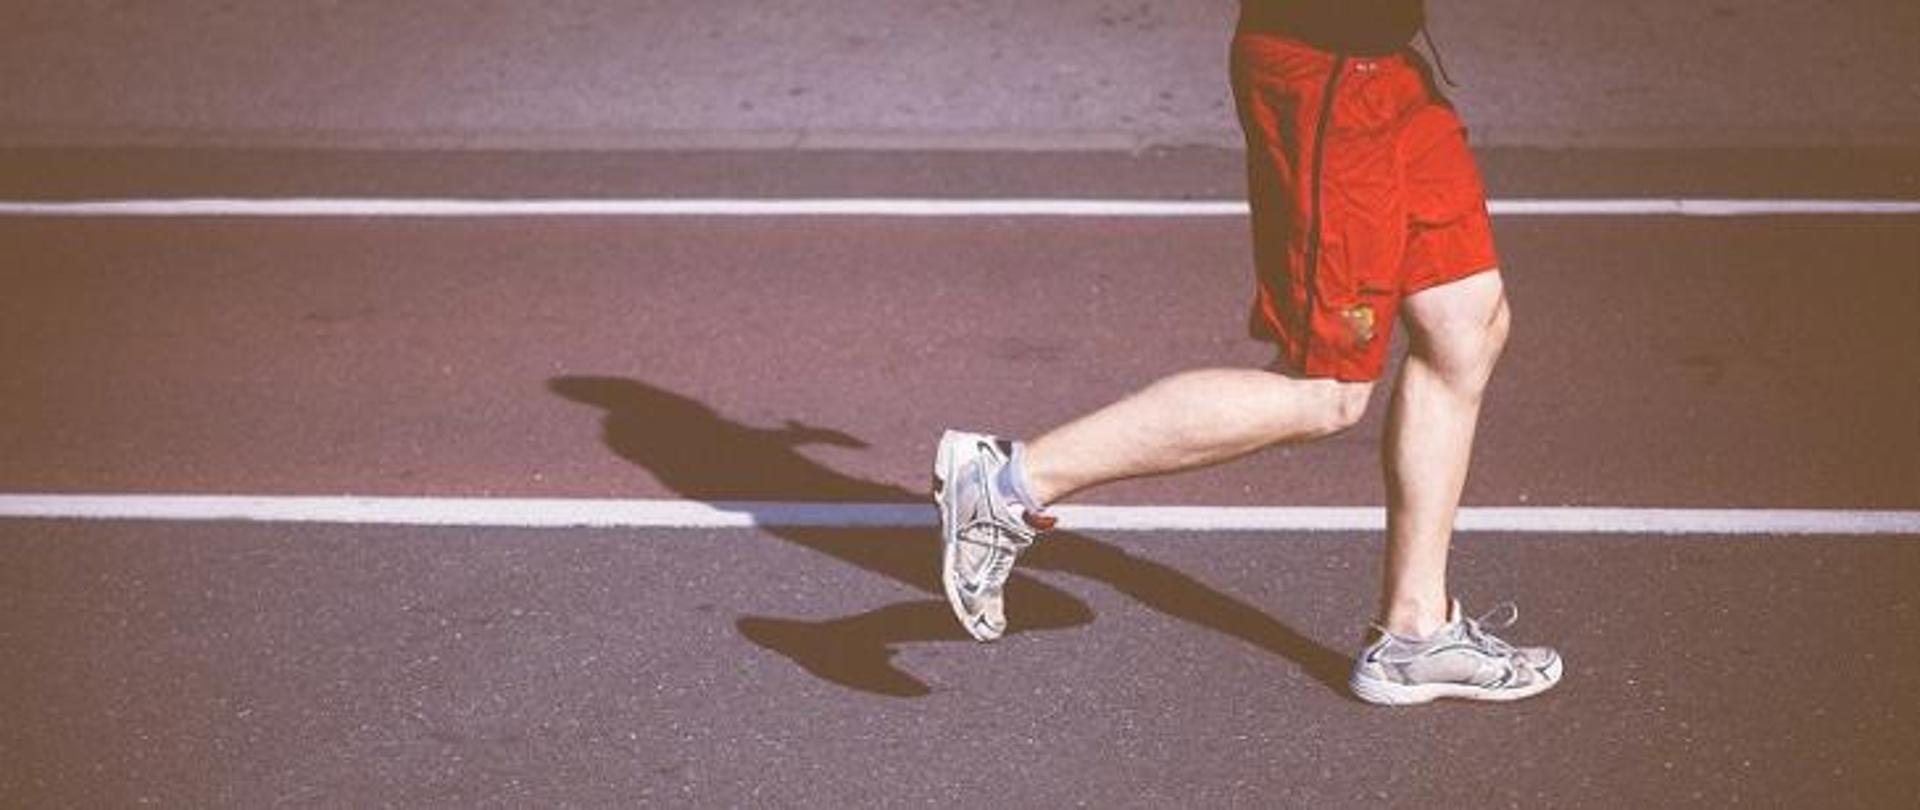 Aktywność fizyczna – Światowy Dzień Zdrowia 2021 - biegacz na bieżni